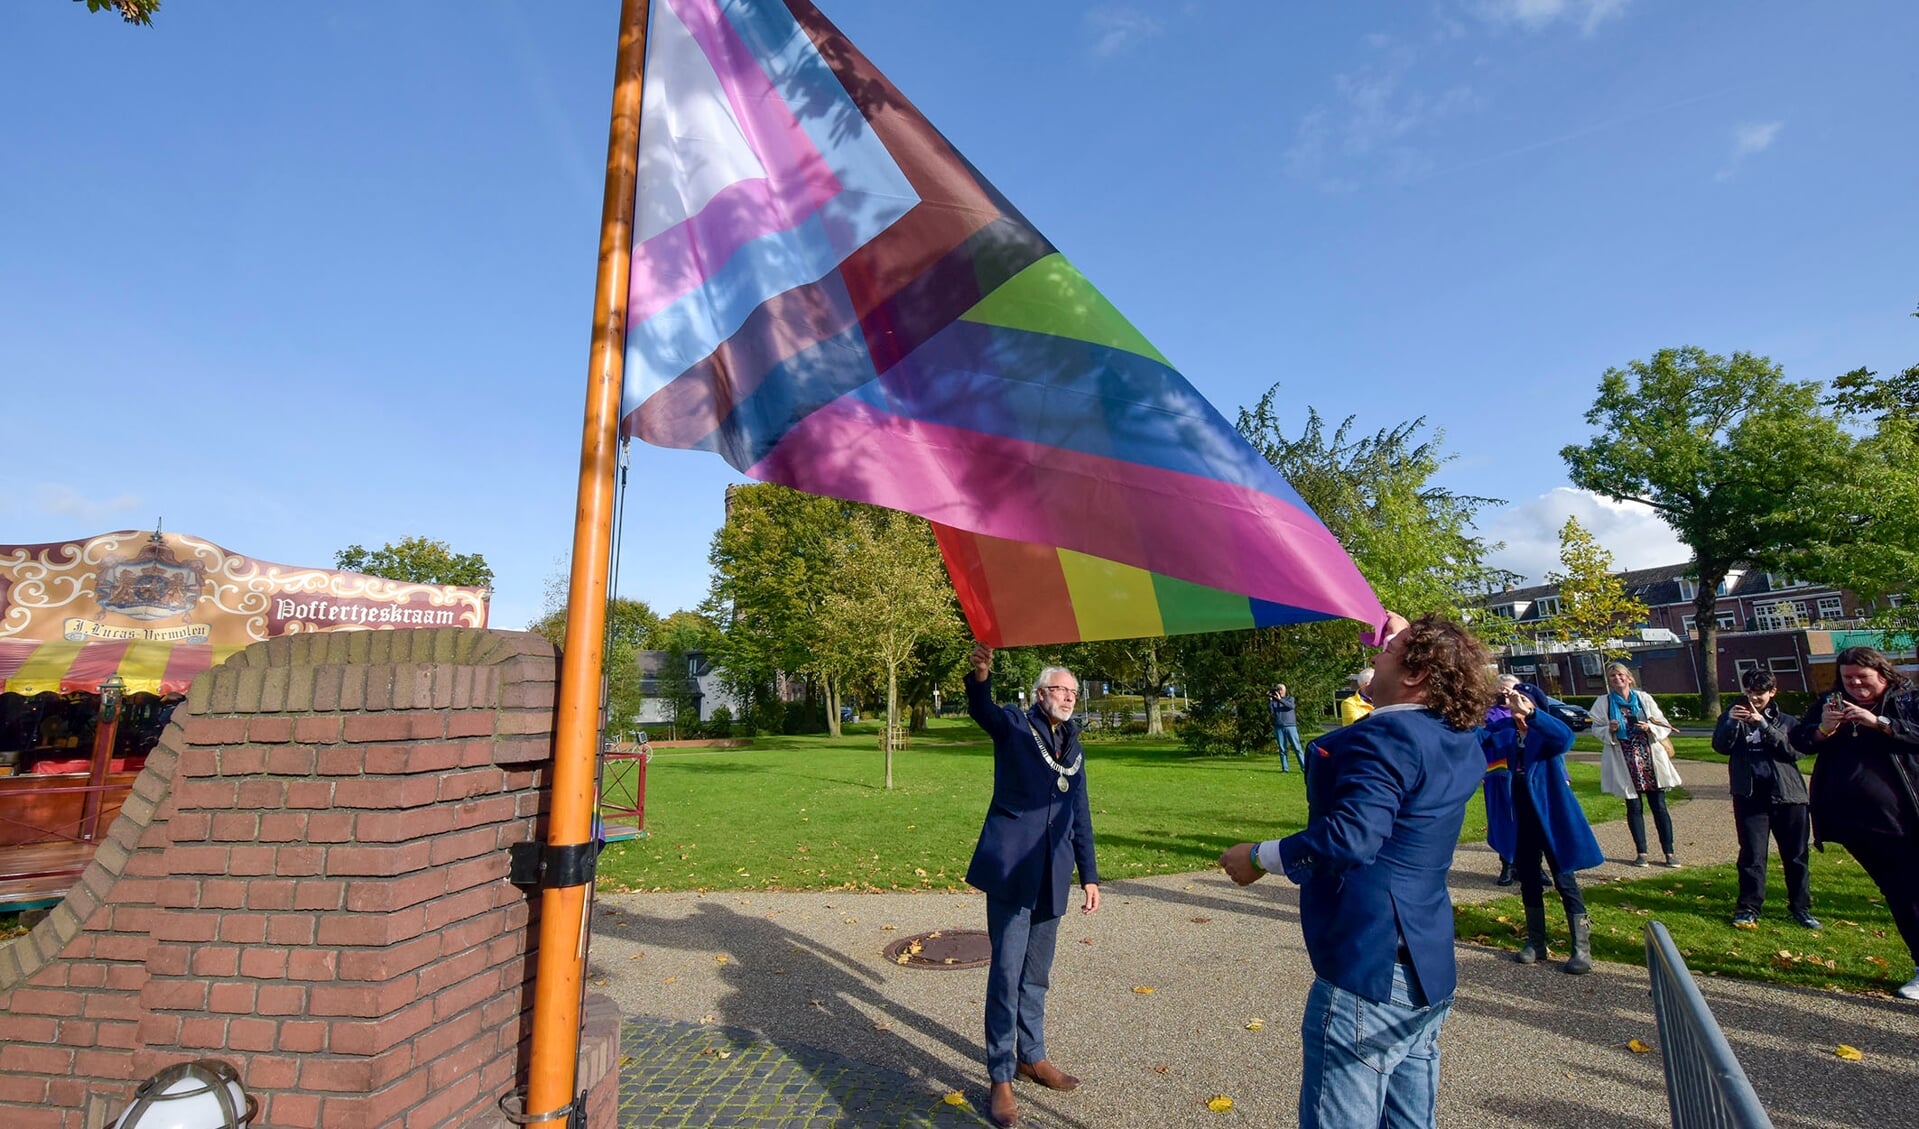 • Burgemeester Victor Molkenboer en wethouder George Bech (inclusie) hijsen de Progress Pride vlag.